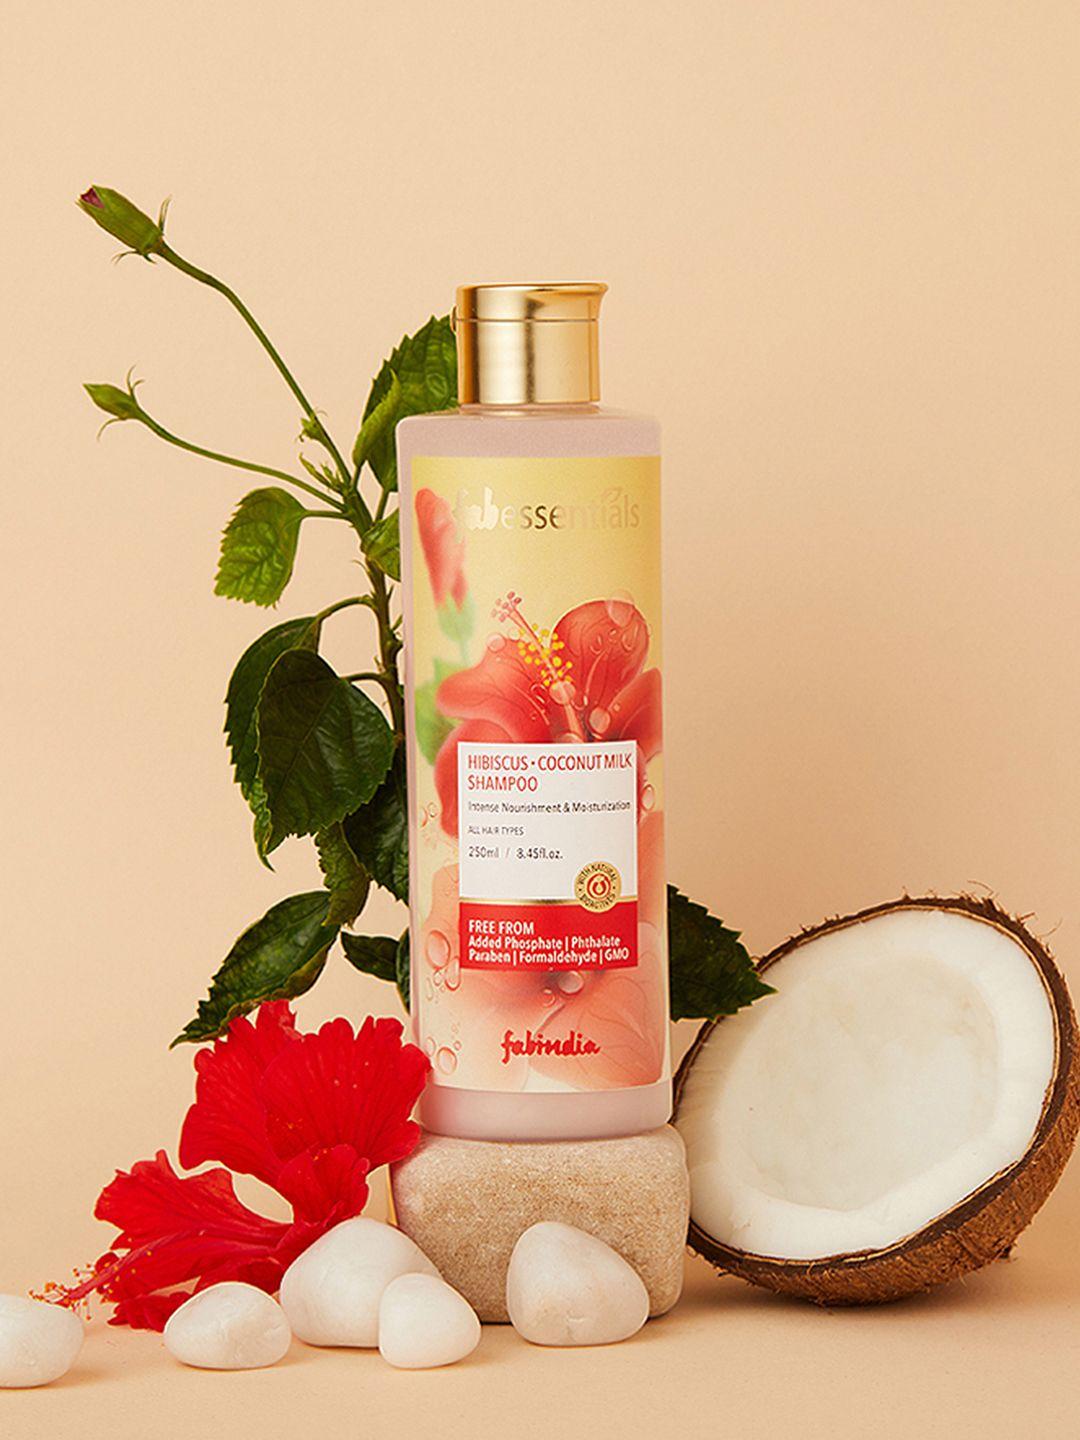 fabindia fabessentials hibiscus coconut milk intense nourishment shampoo - 250ml